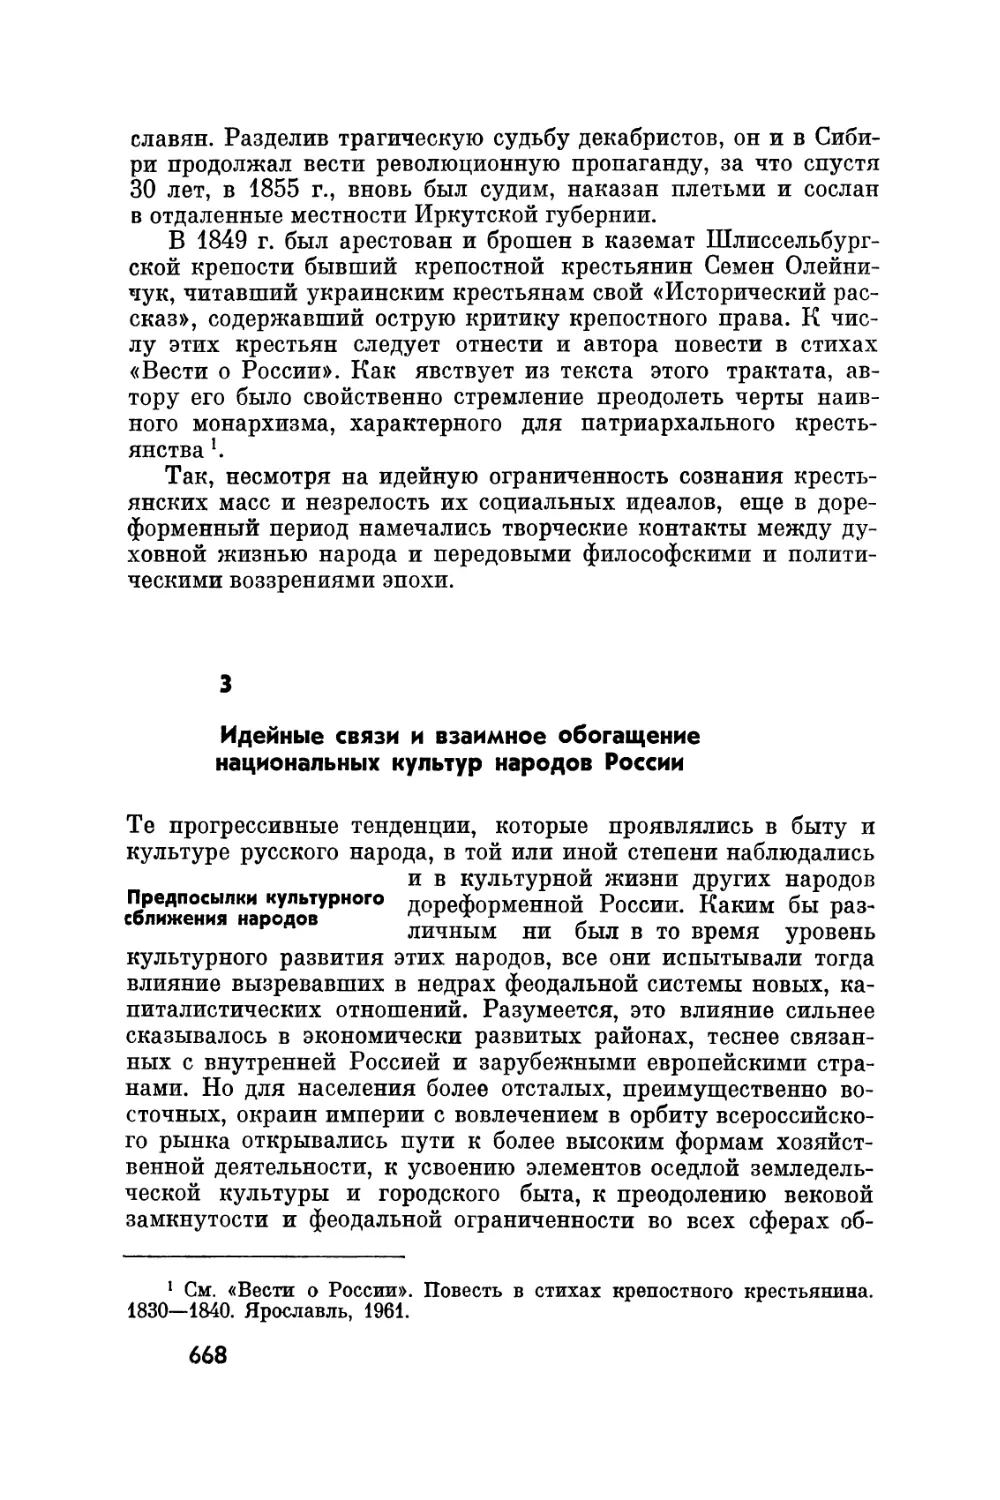 3. Идейные связи и взаимное обогащение национальных культур народов России